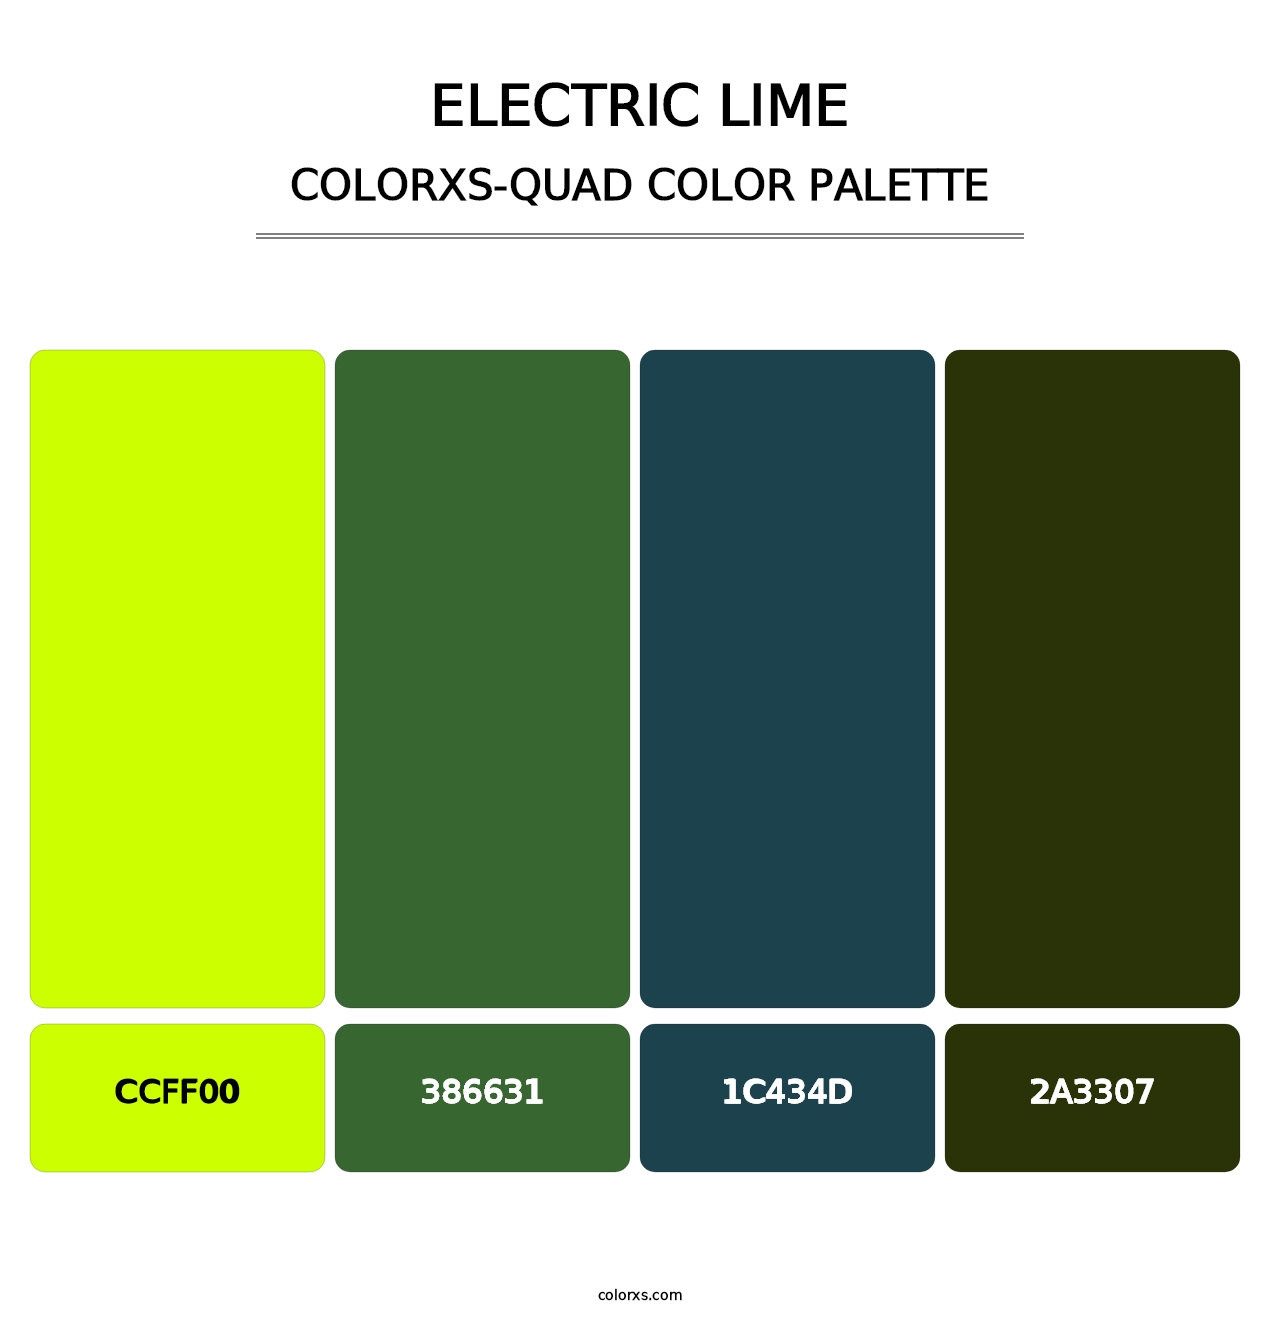 Electric Lime - Colorxs Quad Palette